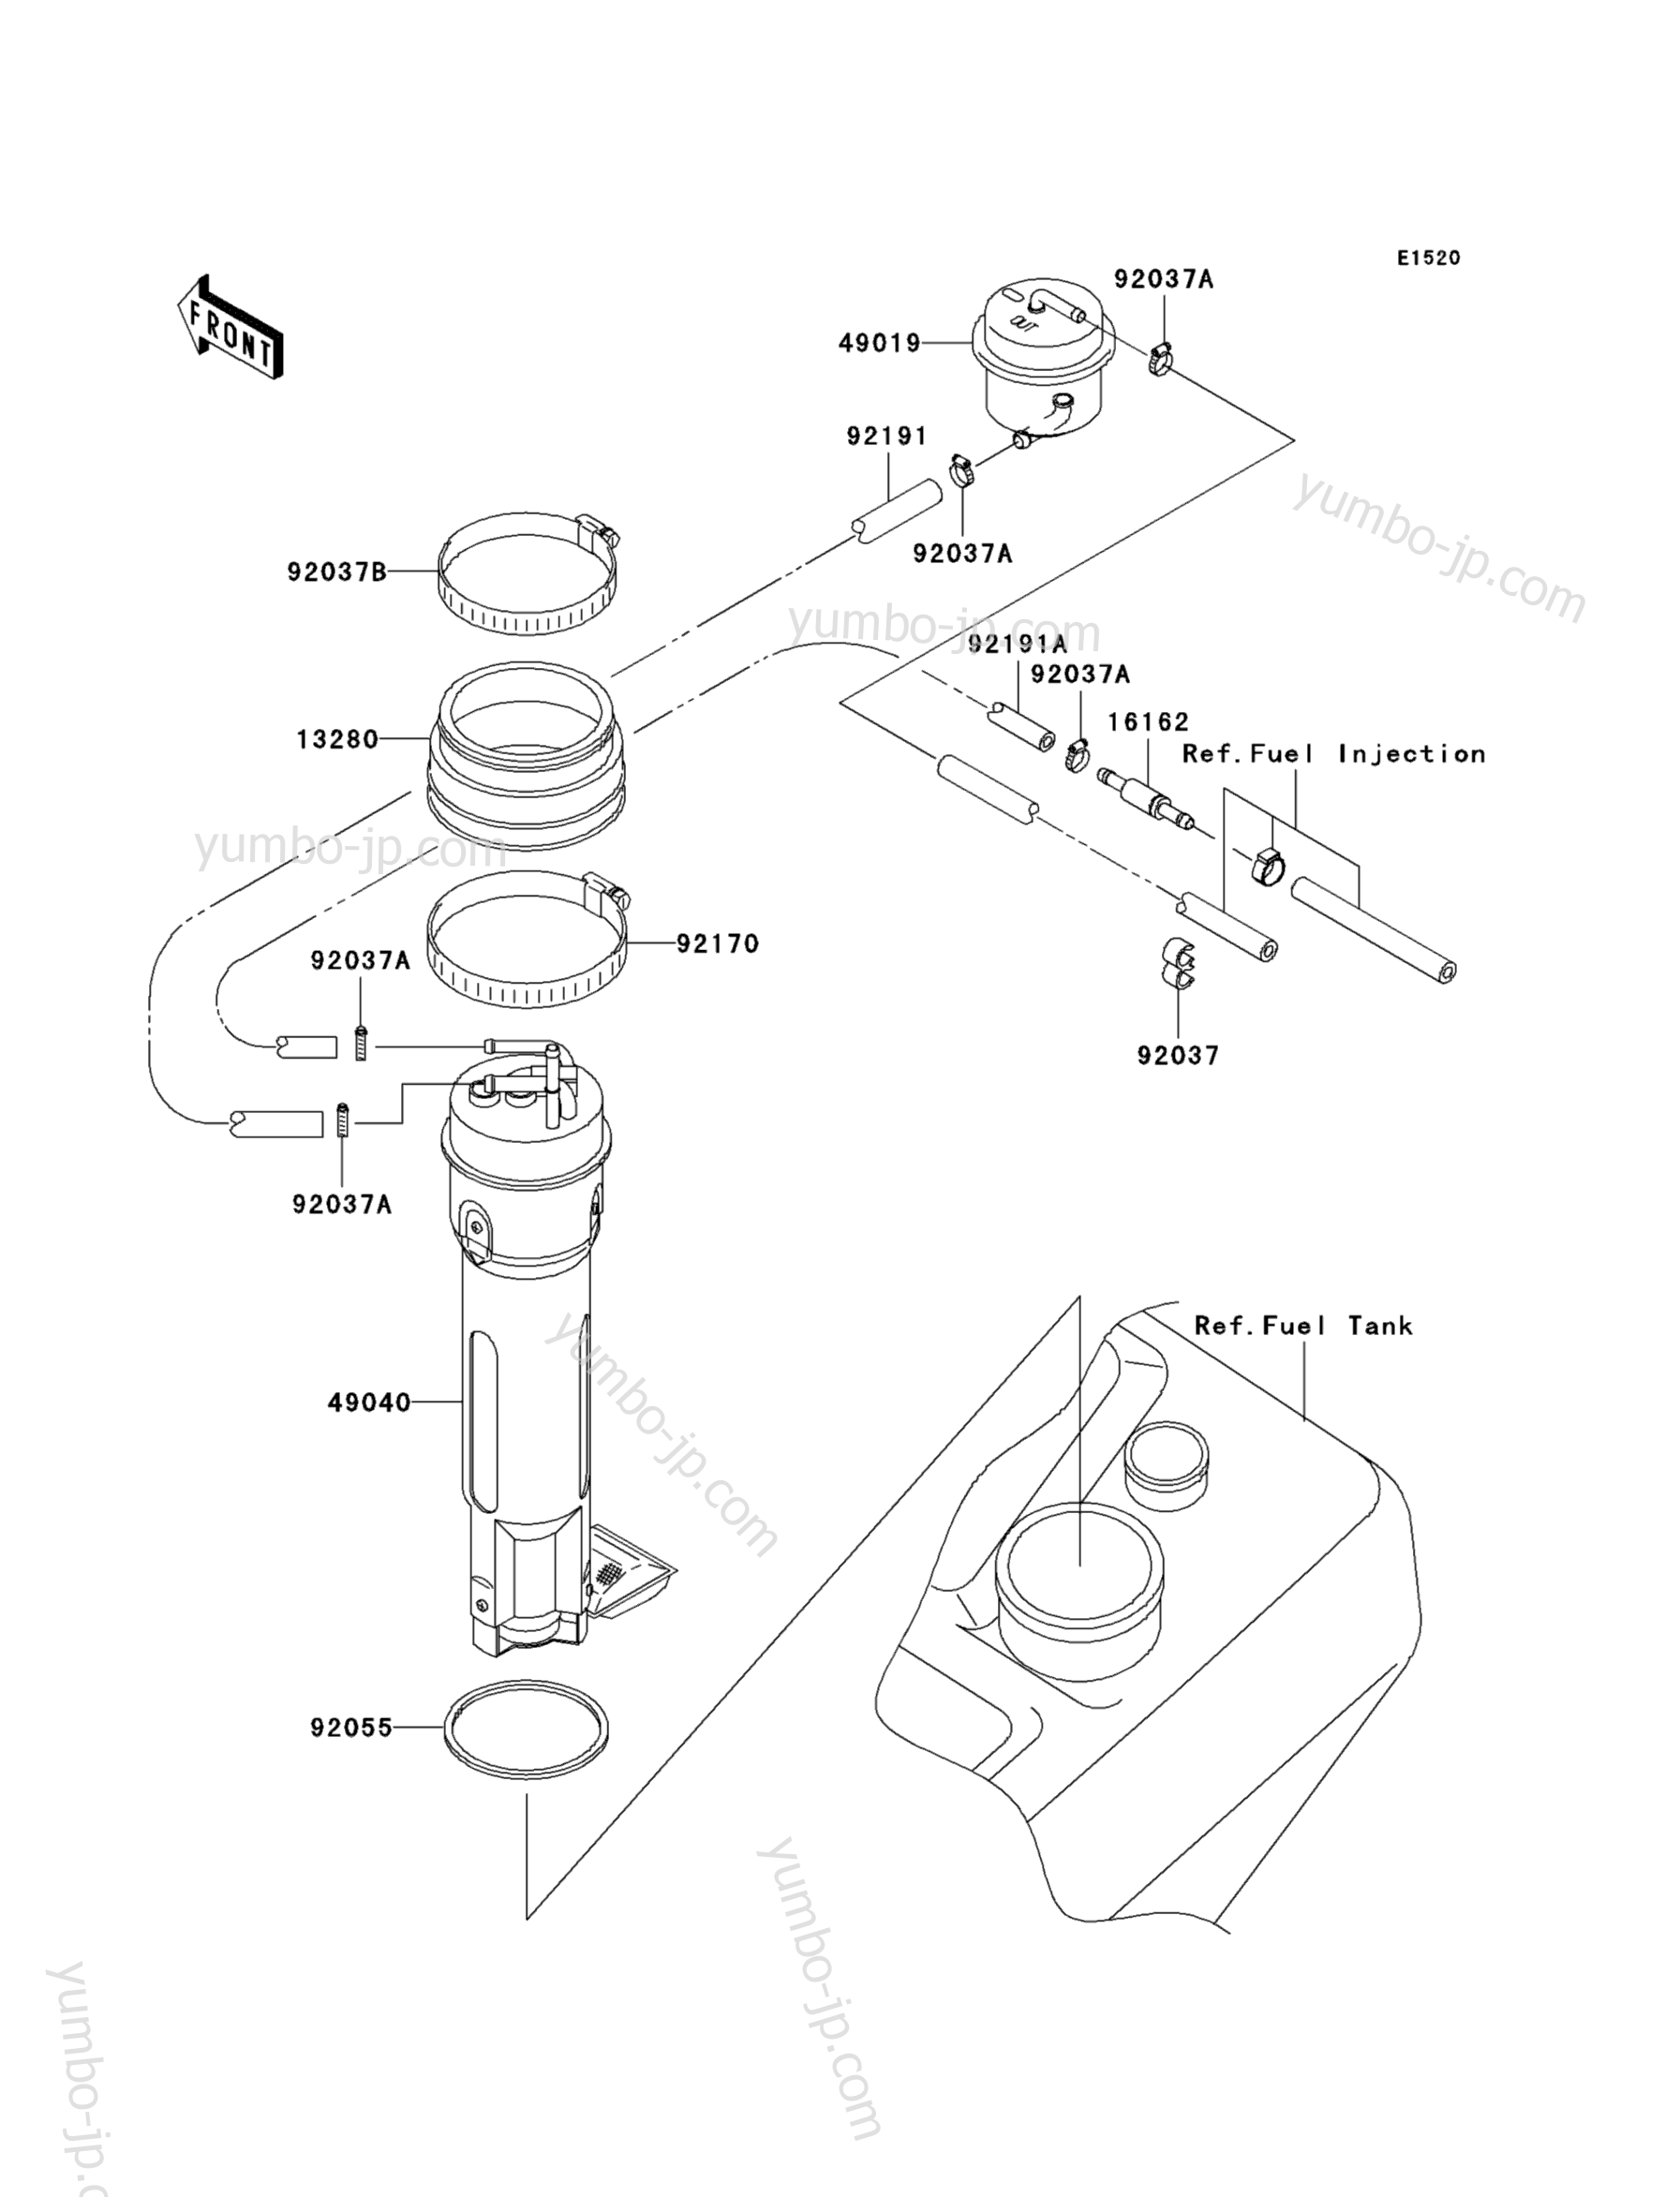 Топливный насос для гидроциклов KAWASAKI JET SKI ULTRA 130 D.I. (JH1100-B1) 2001 г.